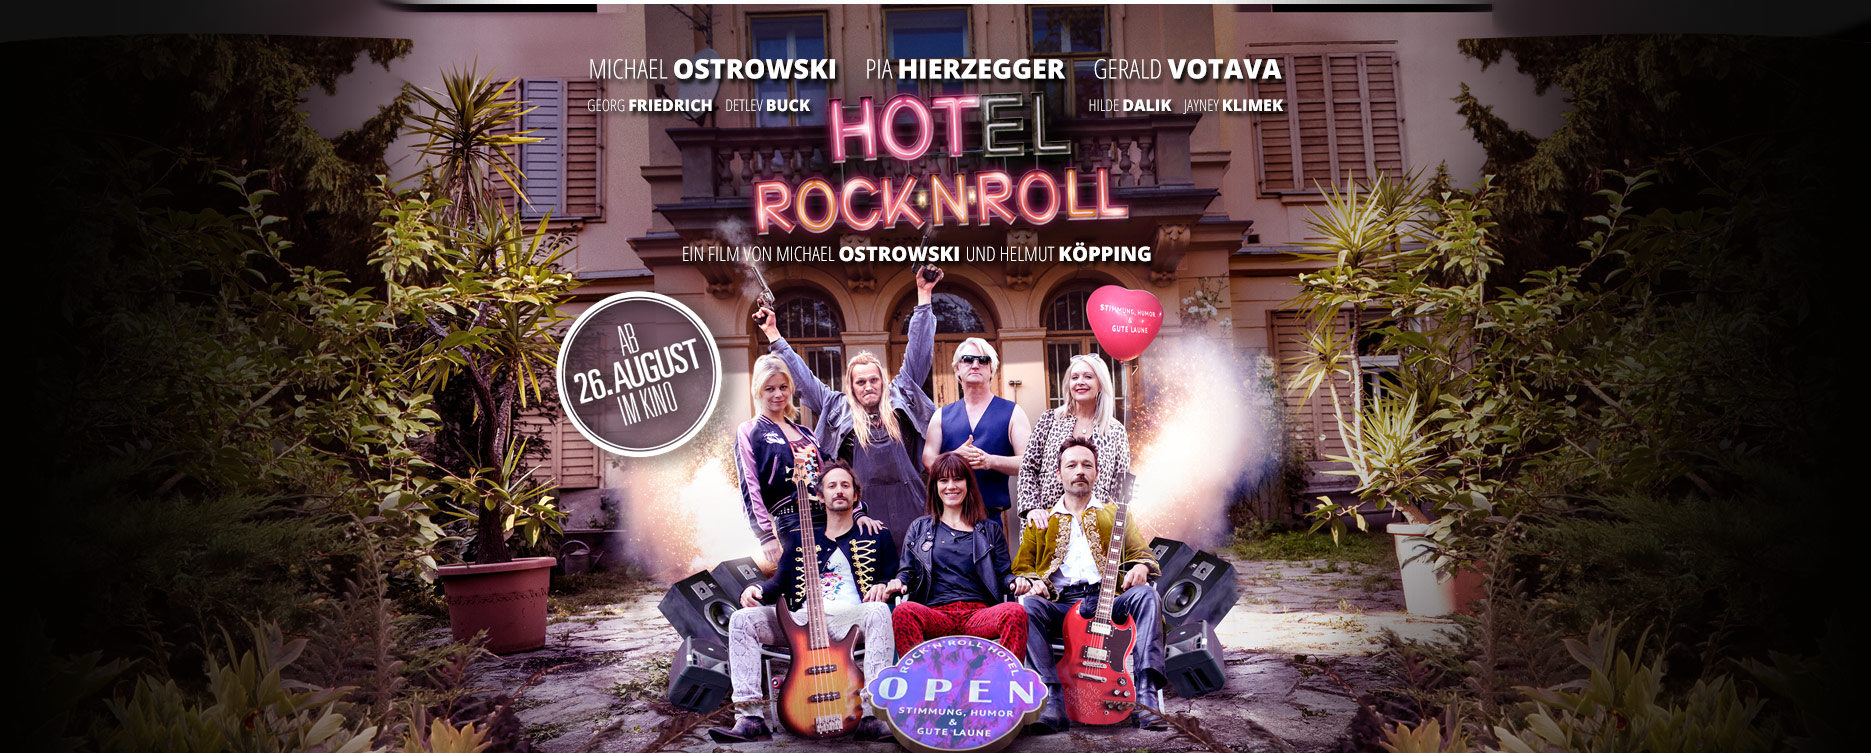 Hotel RocknRoll - Ab 26. August im Kino